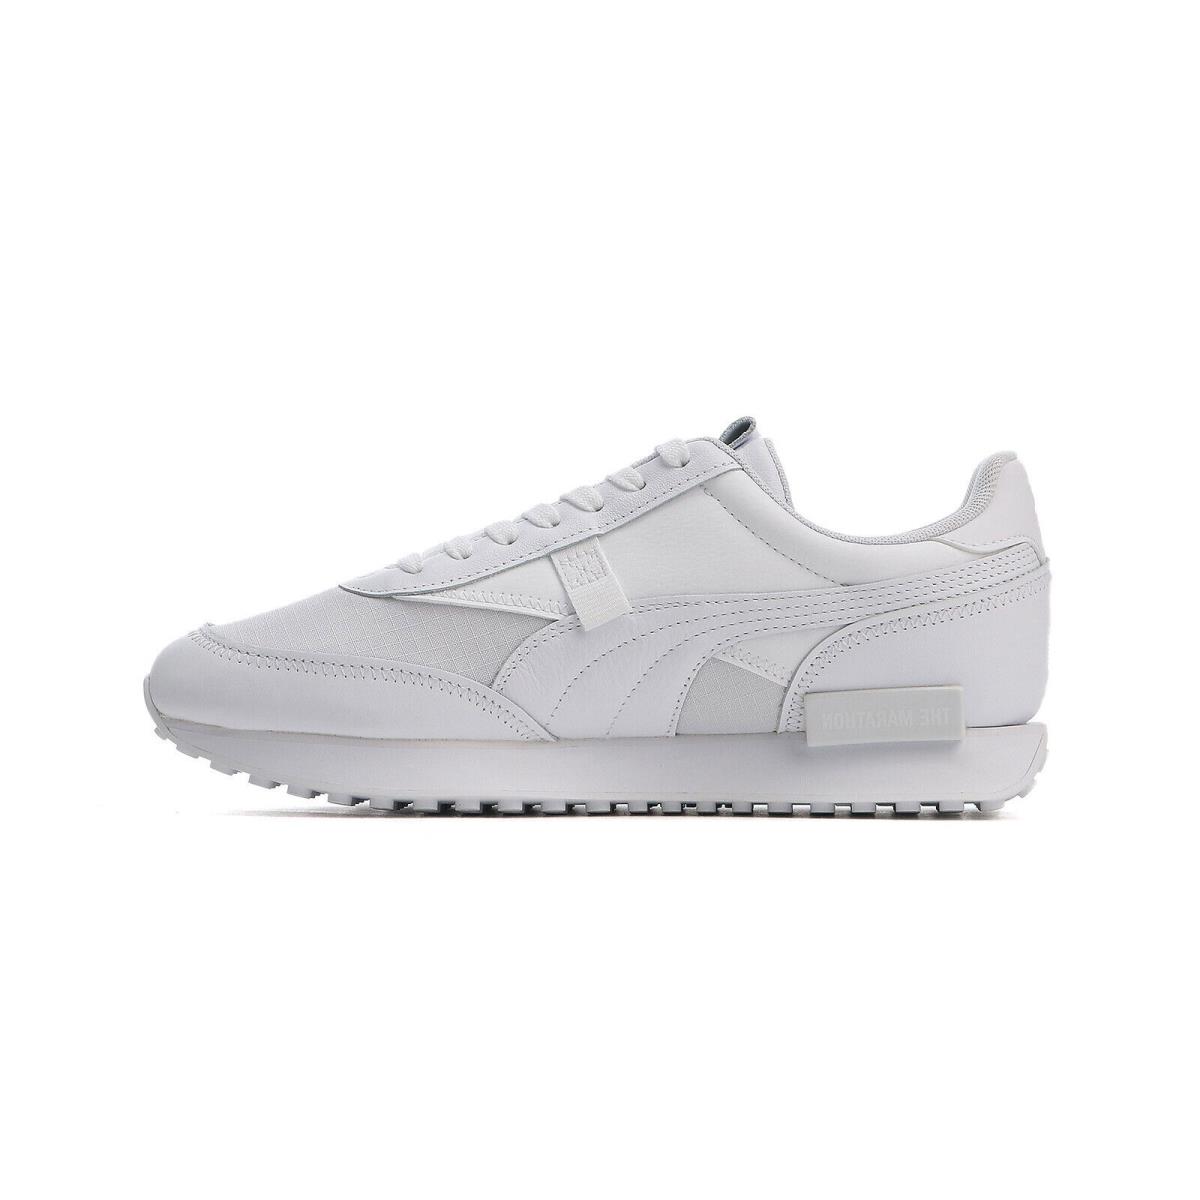 Puma Future Rider X Tmc 38179901 Mens White Lifestyle Sneakers Shoes - White